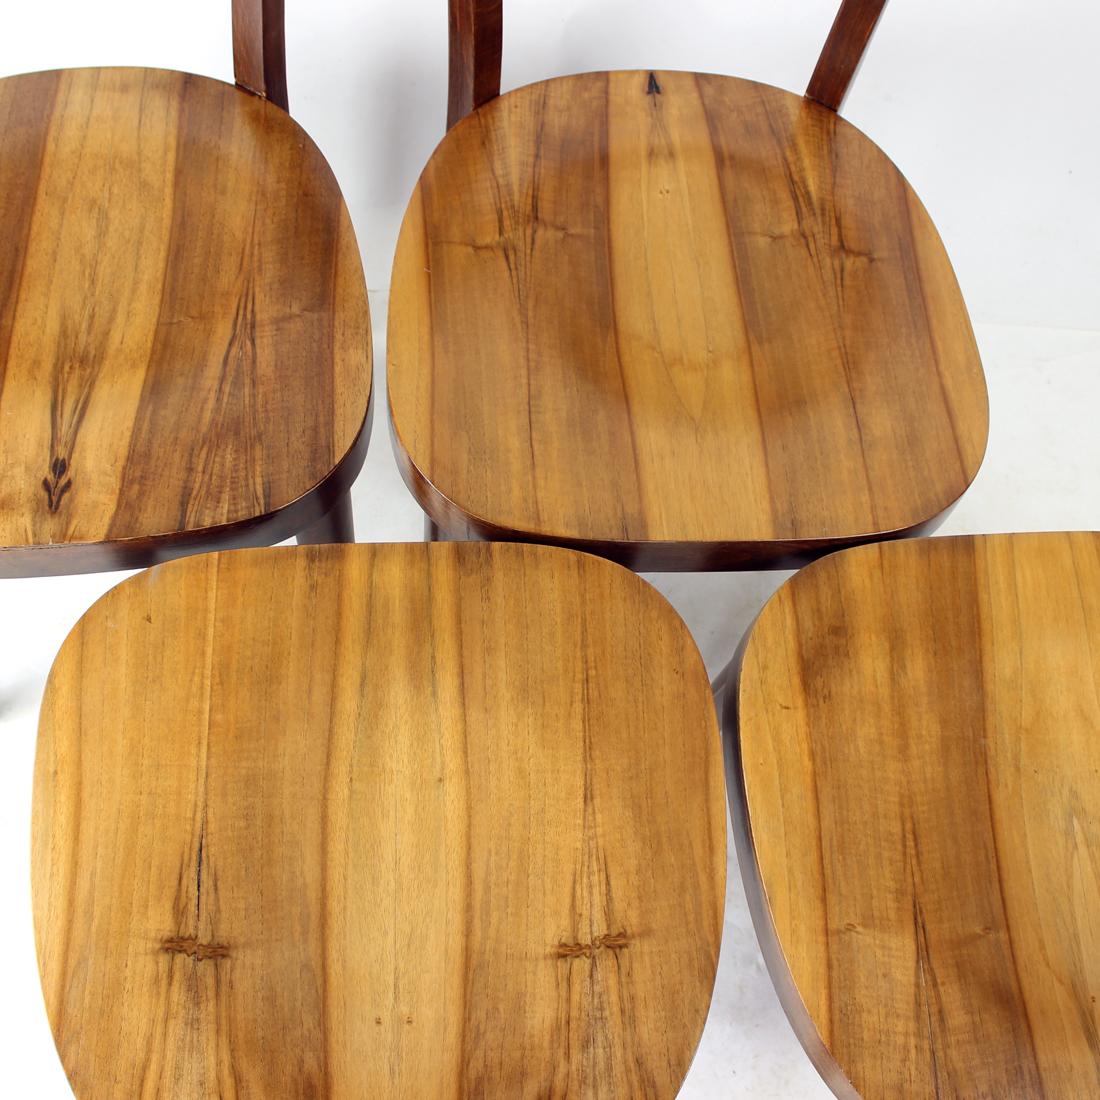 Schöner Satz von vier Holzstühlen, hergestellt in der Tschechoslowakei von der Firma Tatra in den 1950er Jahren. Die Stühle bestehen aus einer Eichenholzkonstruktion mit Sitz und Rückenlehne aus Walnussfurnier. Die schöne Struktur und das Furnier